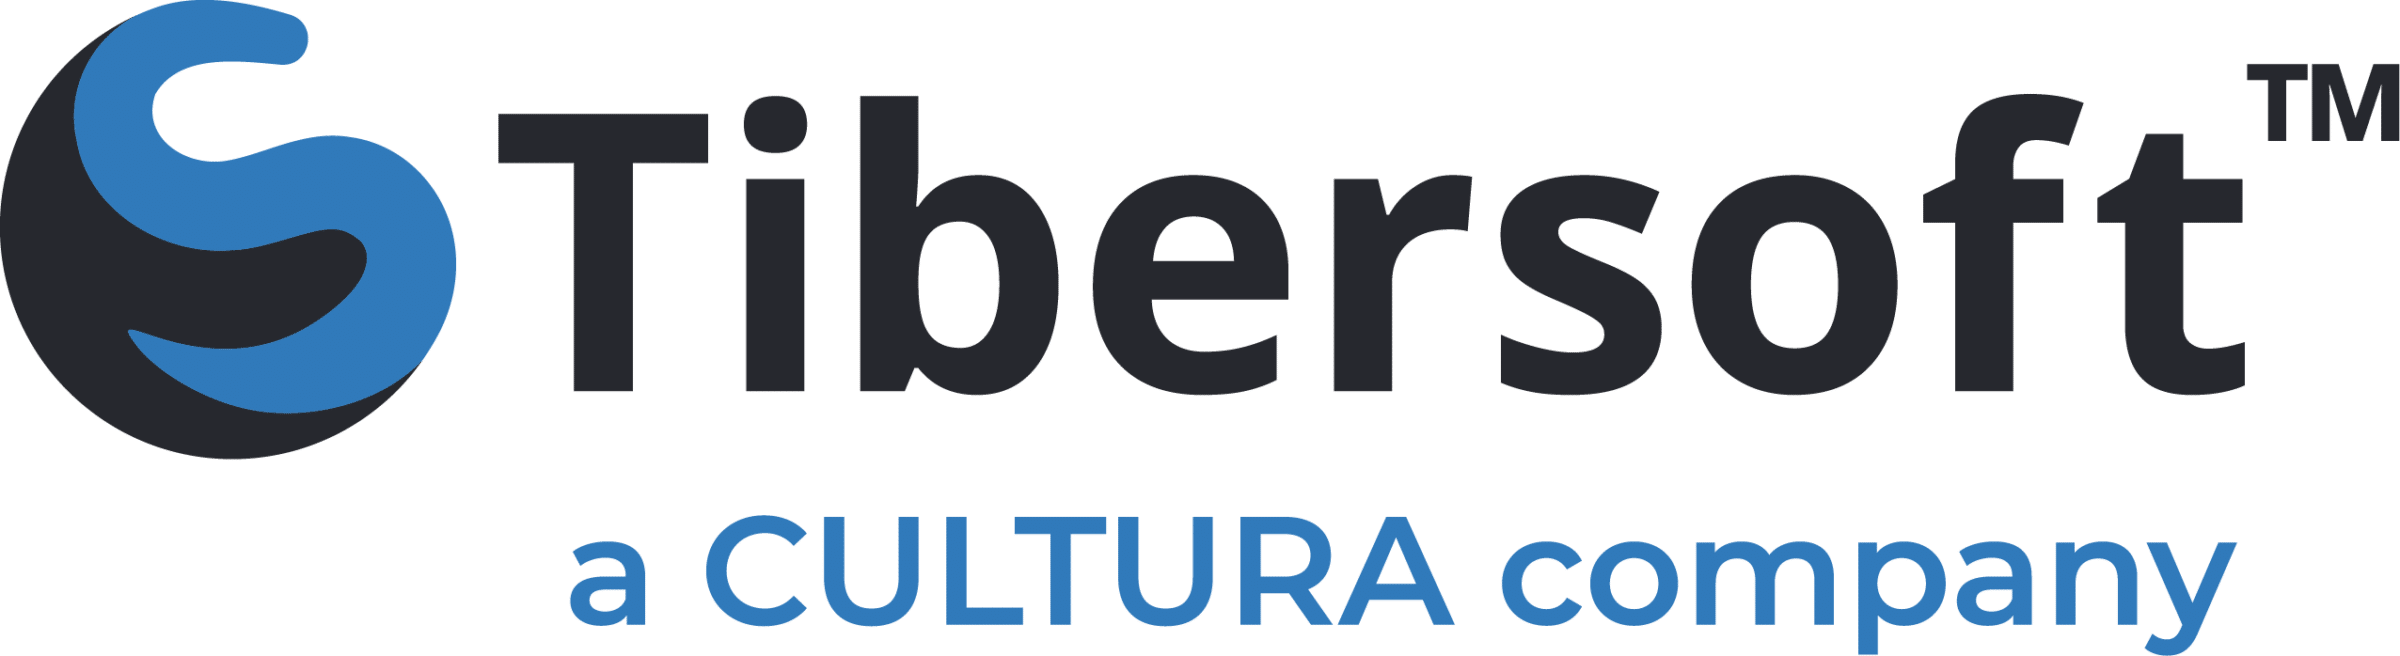 Tibersoft Cultura Logo Full Color